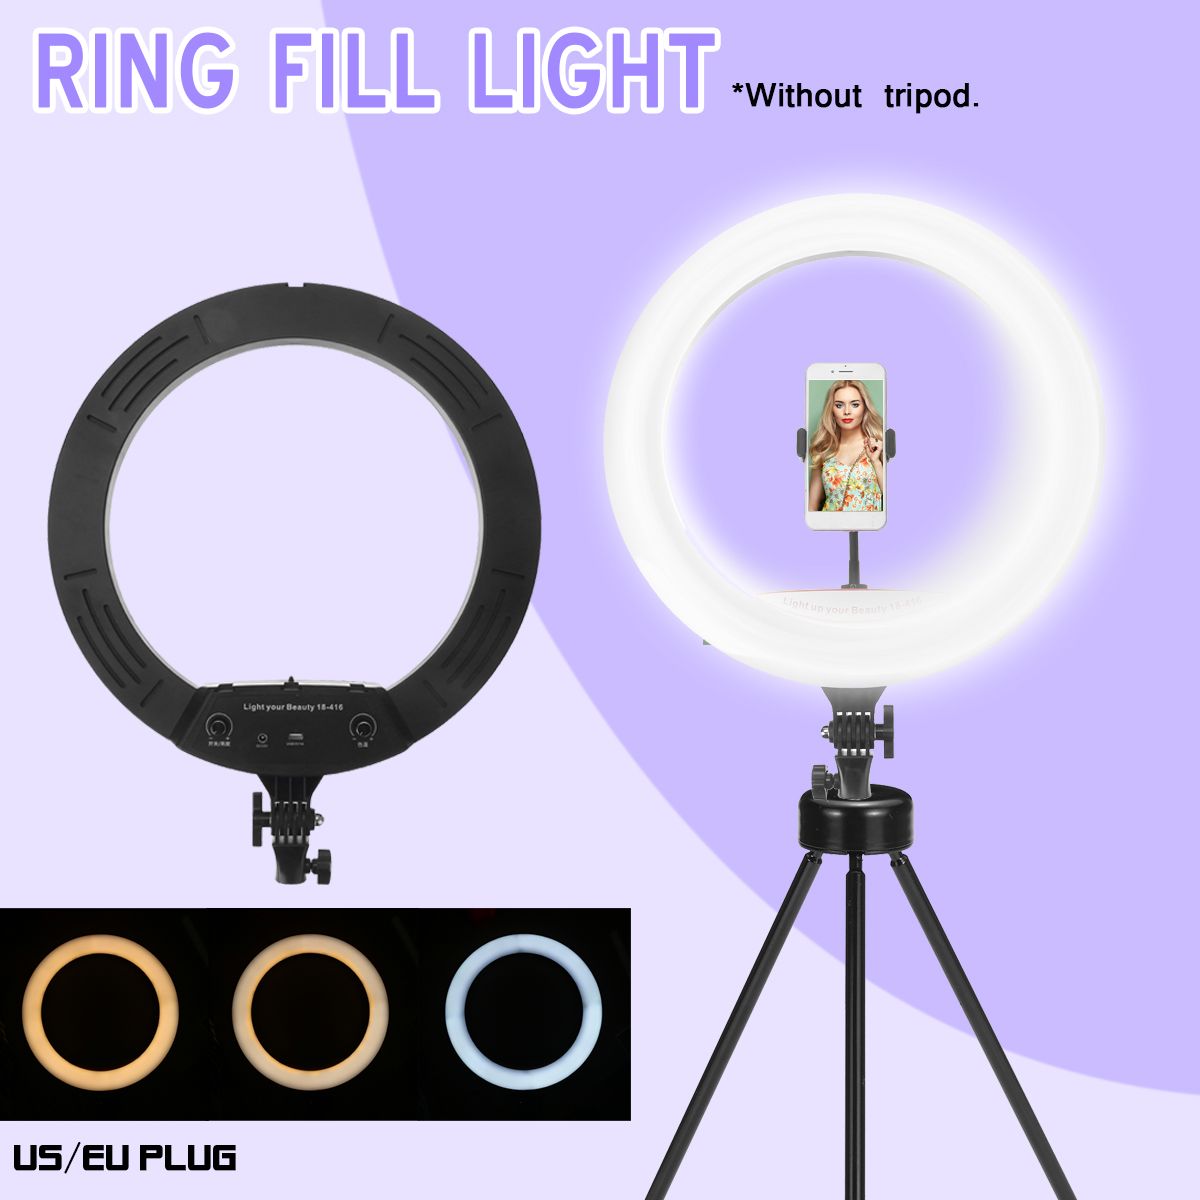 177-inch-Selfie-LED-Ring-Light-for-Youtube-Tiktok-Live-Broadcast-3-Modes-10-Brightness-Dimmable-Mack-1720360